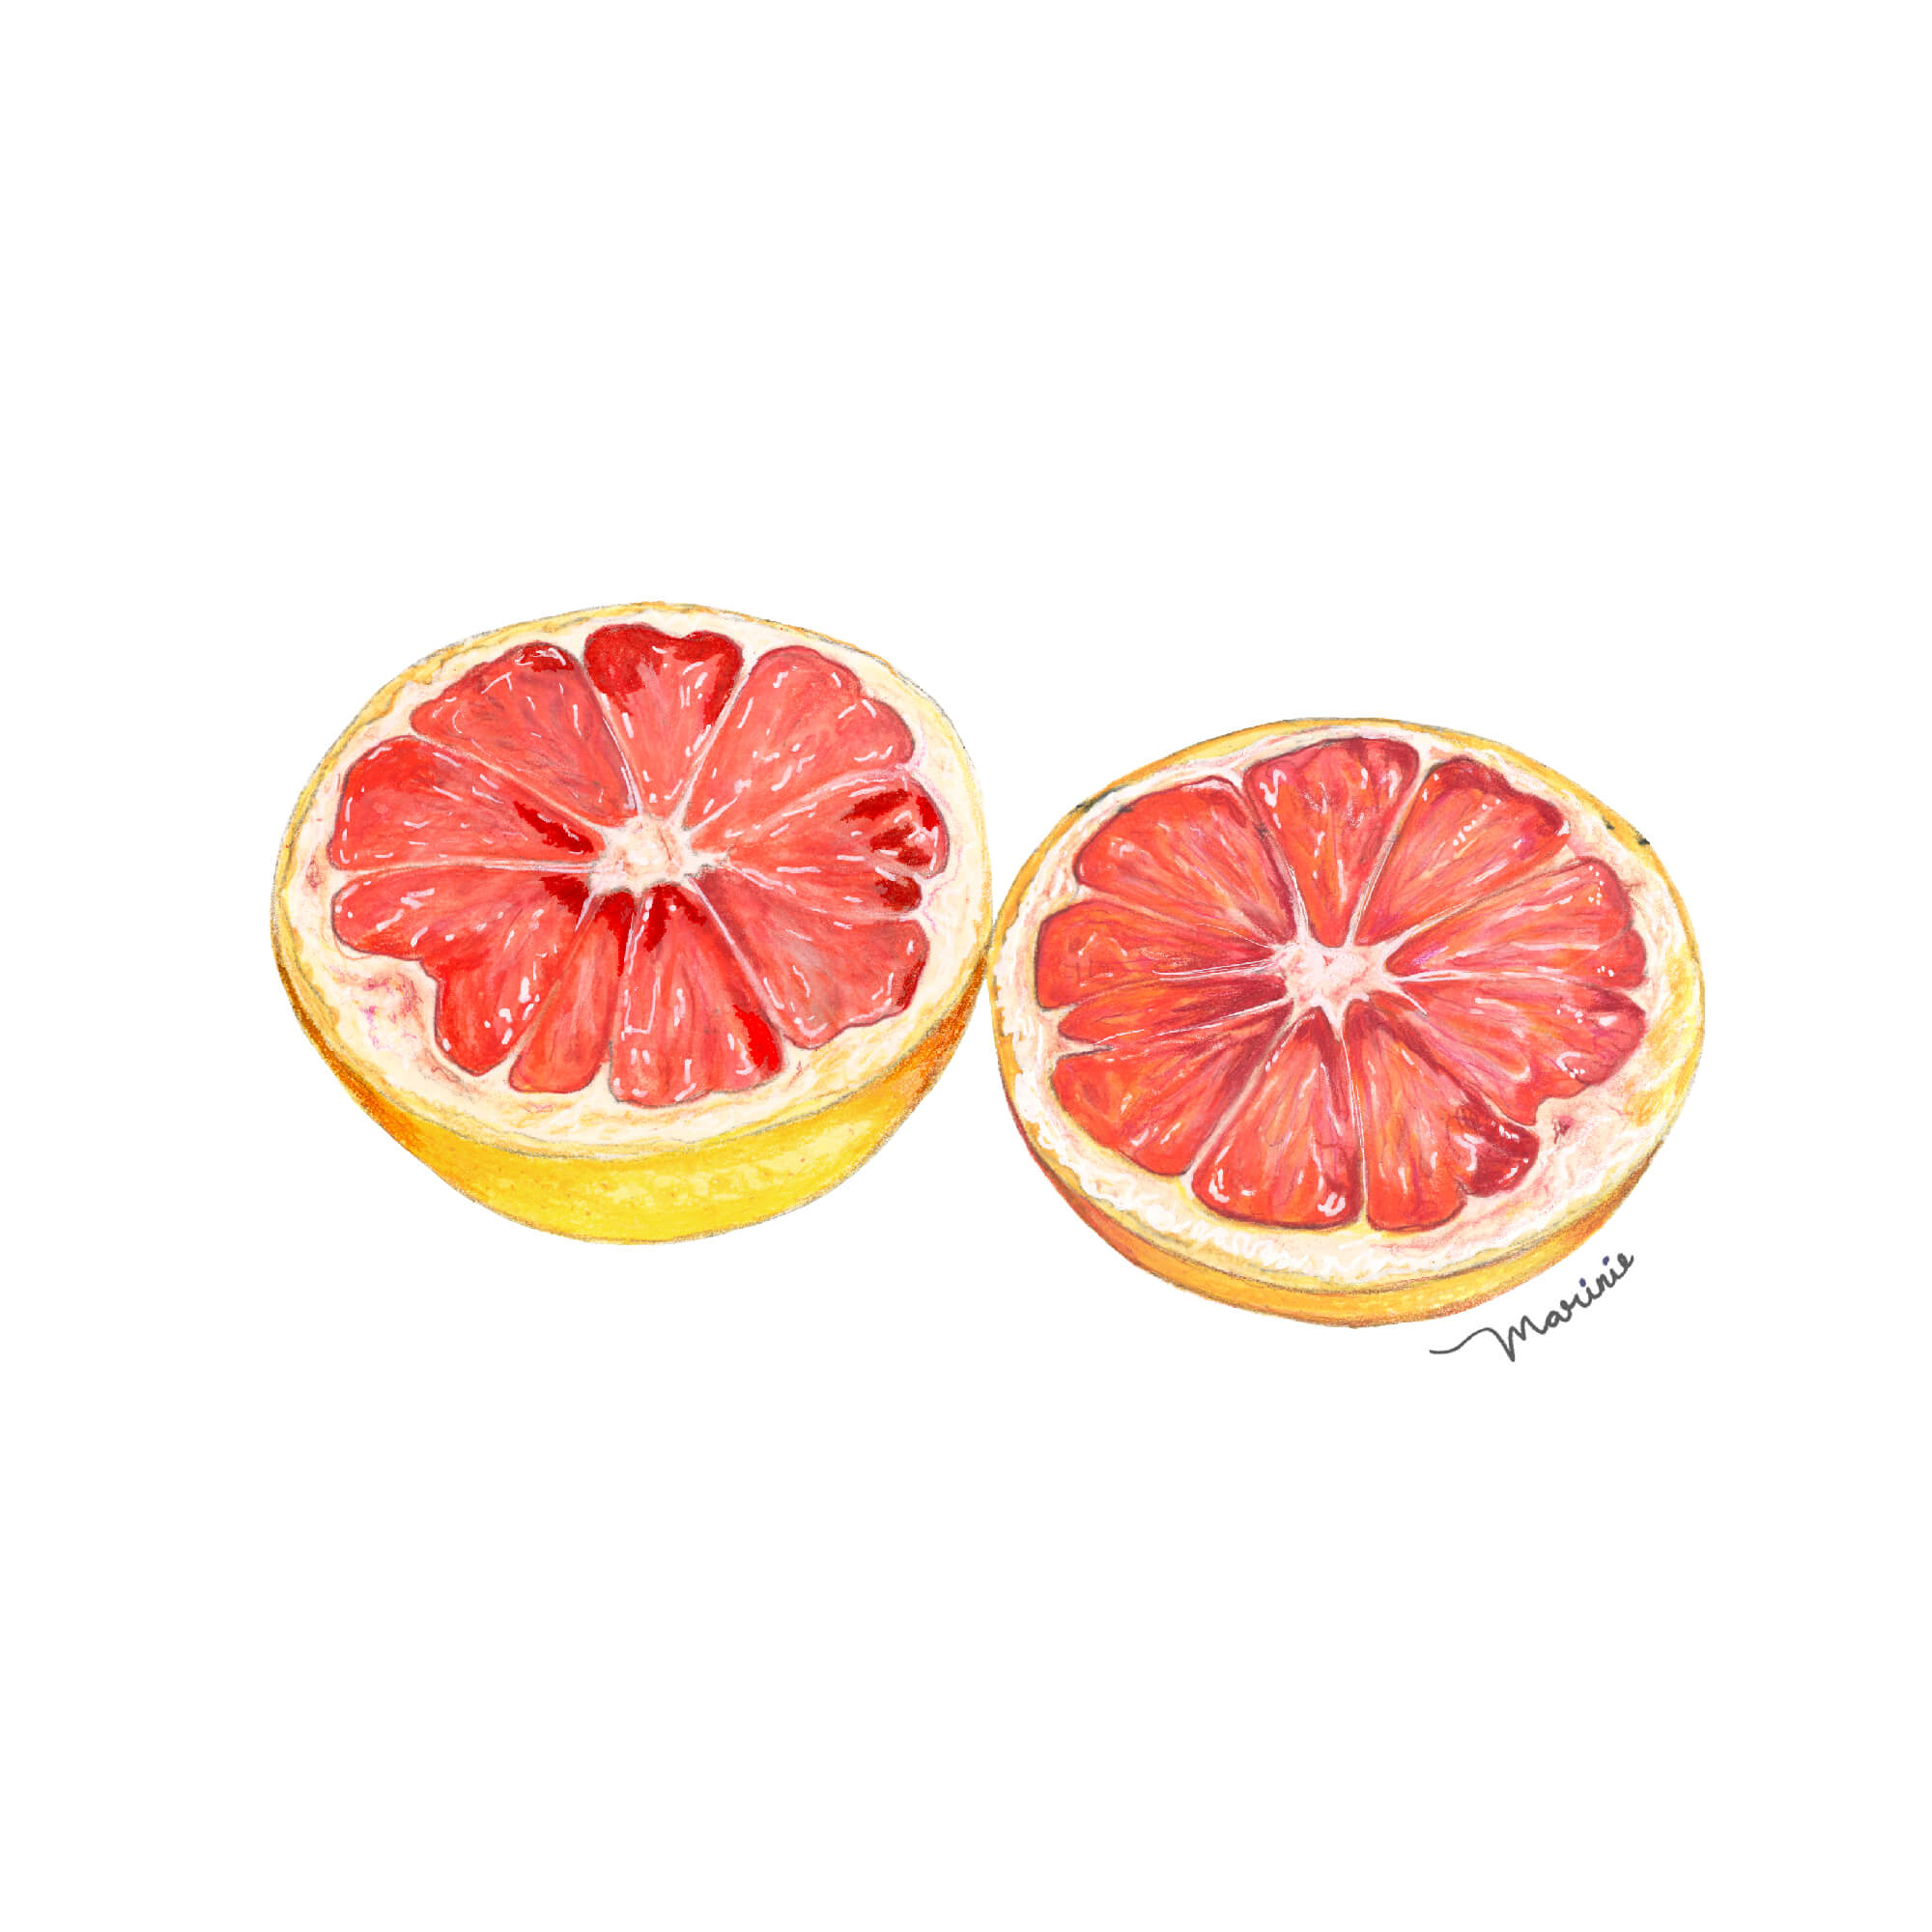 Illustraciones Marinie. Frutas. Toronjas.